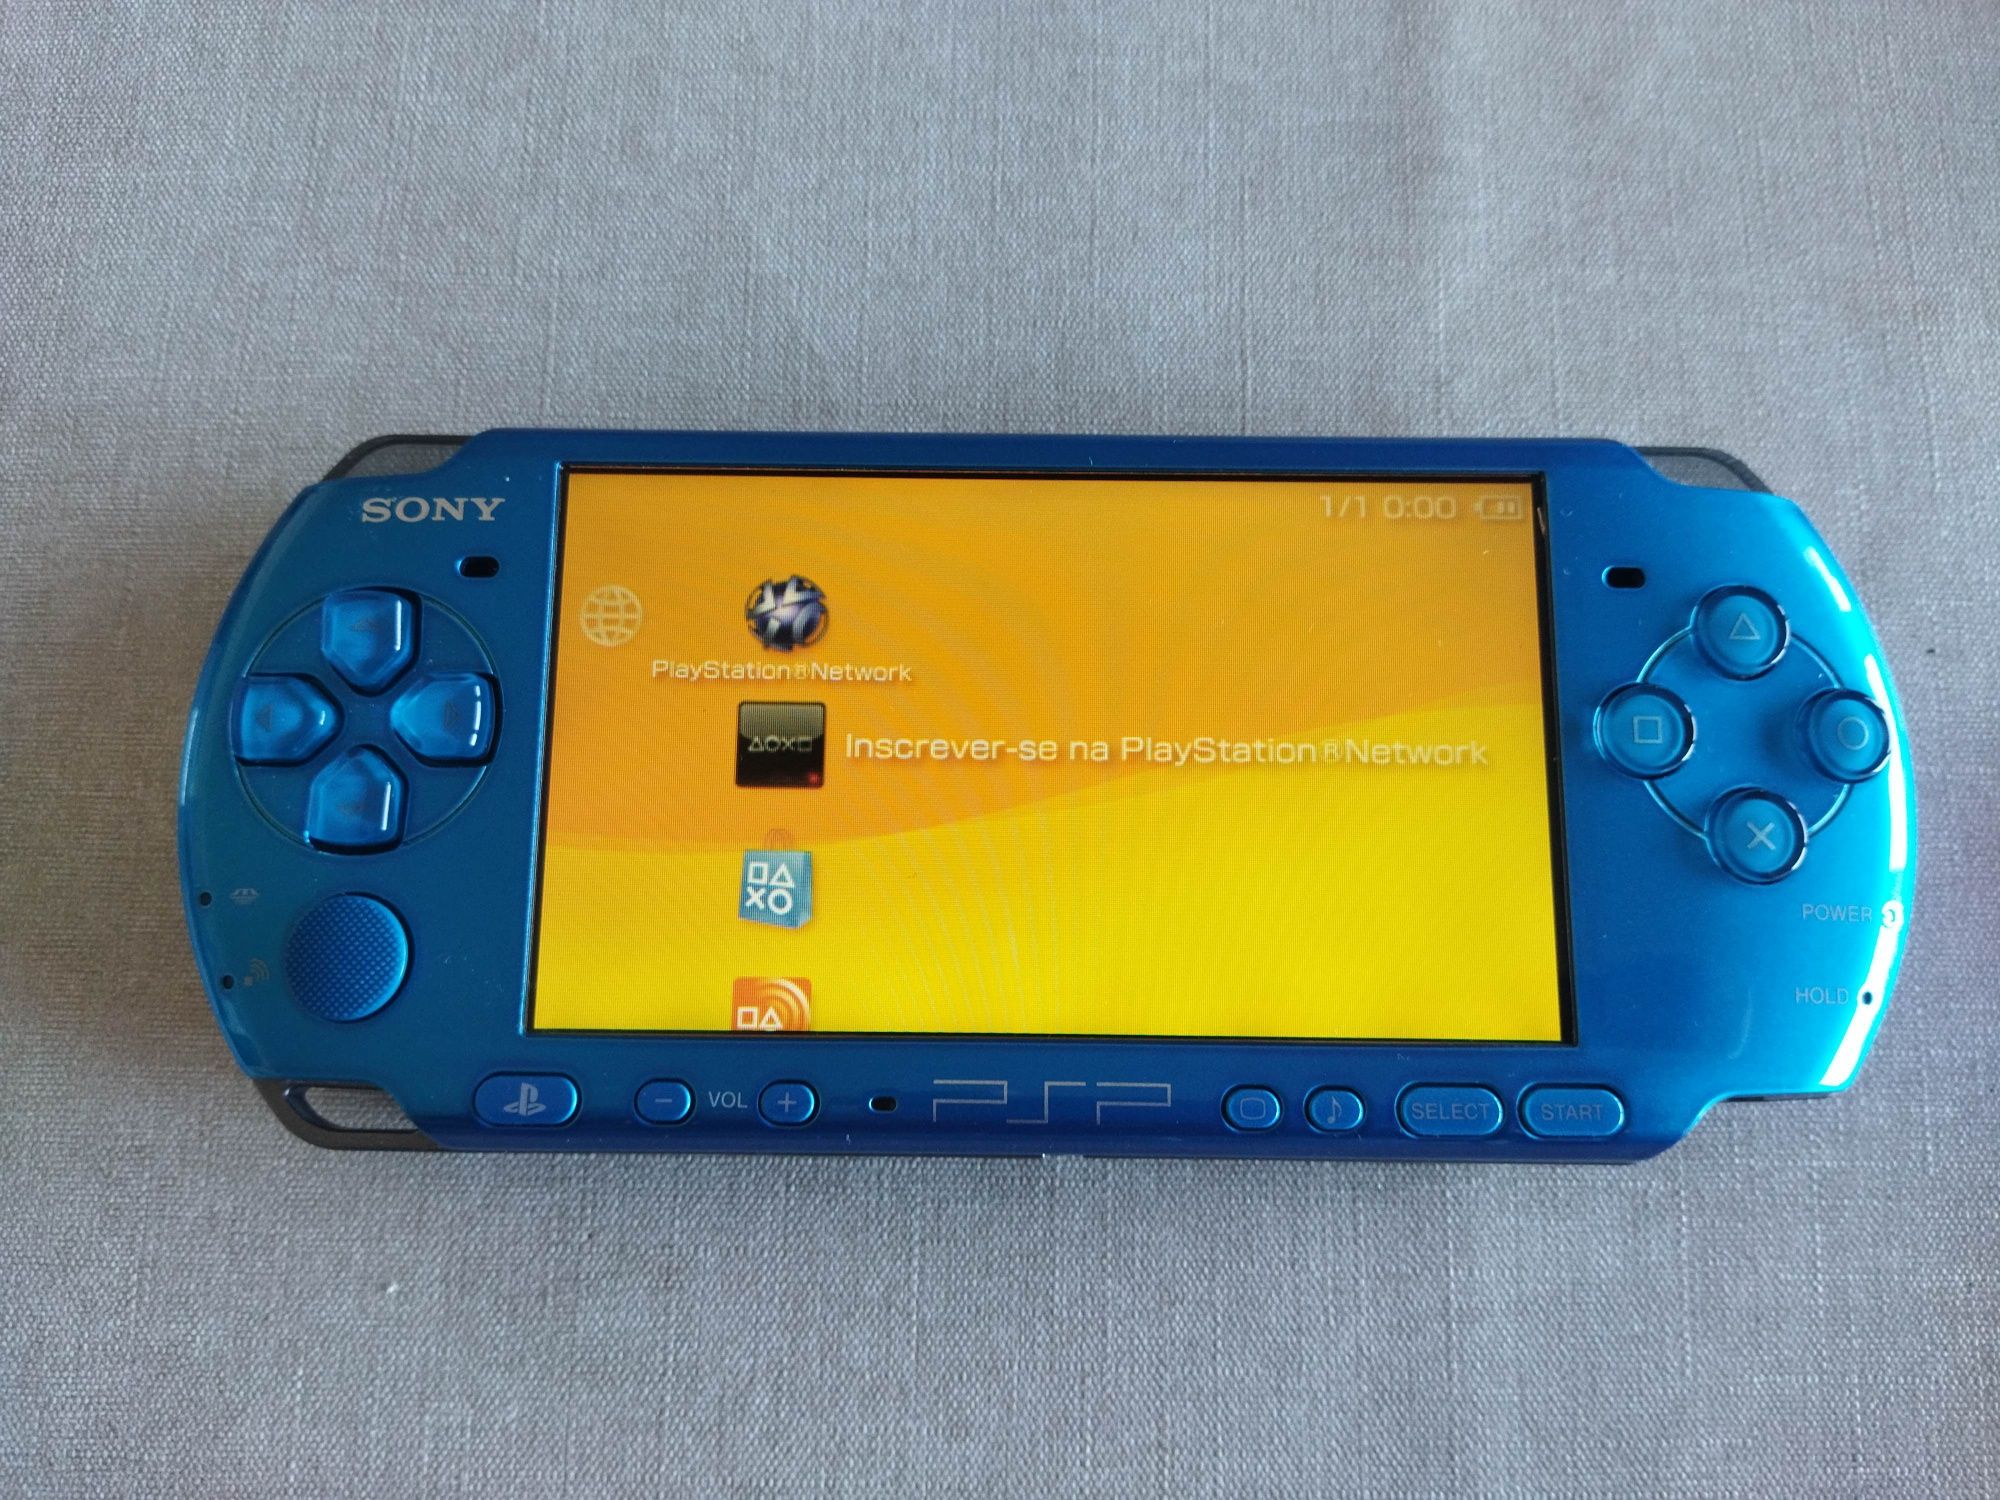 Consola original Sony PSP psp, imaculada, última versão cor rara azul